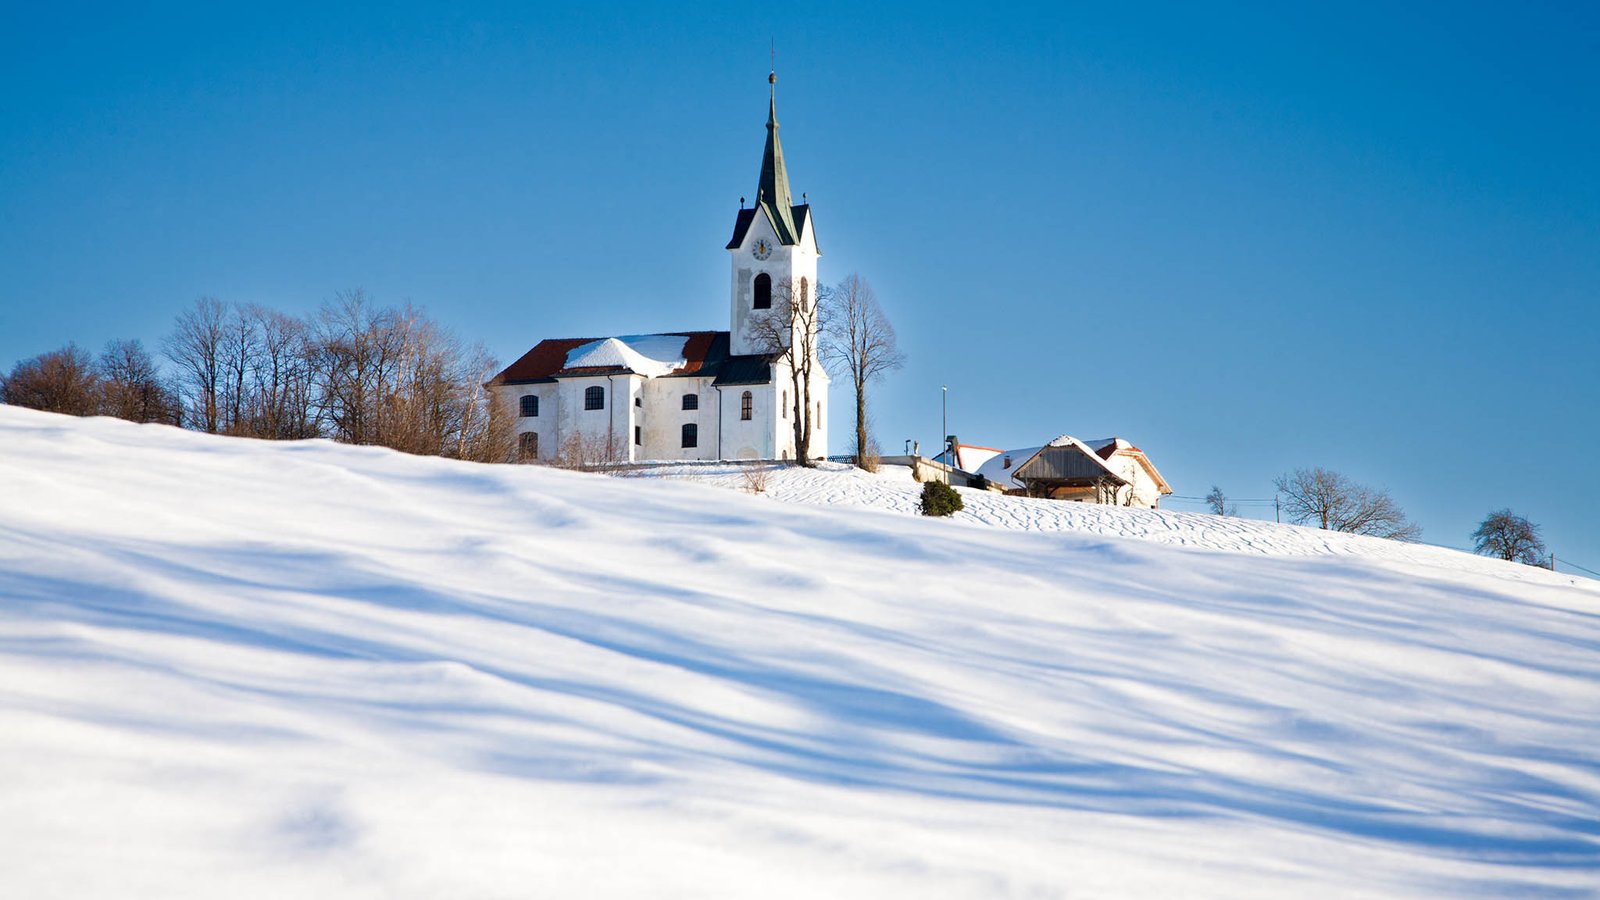 Snowy winter view of the church of Saint Margaret (Sveta Marjeta) in Prezganje to the east of Ljubljana, Slovenia.